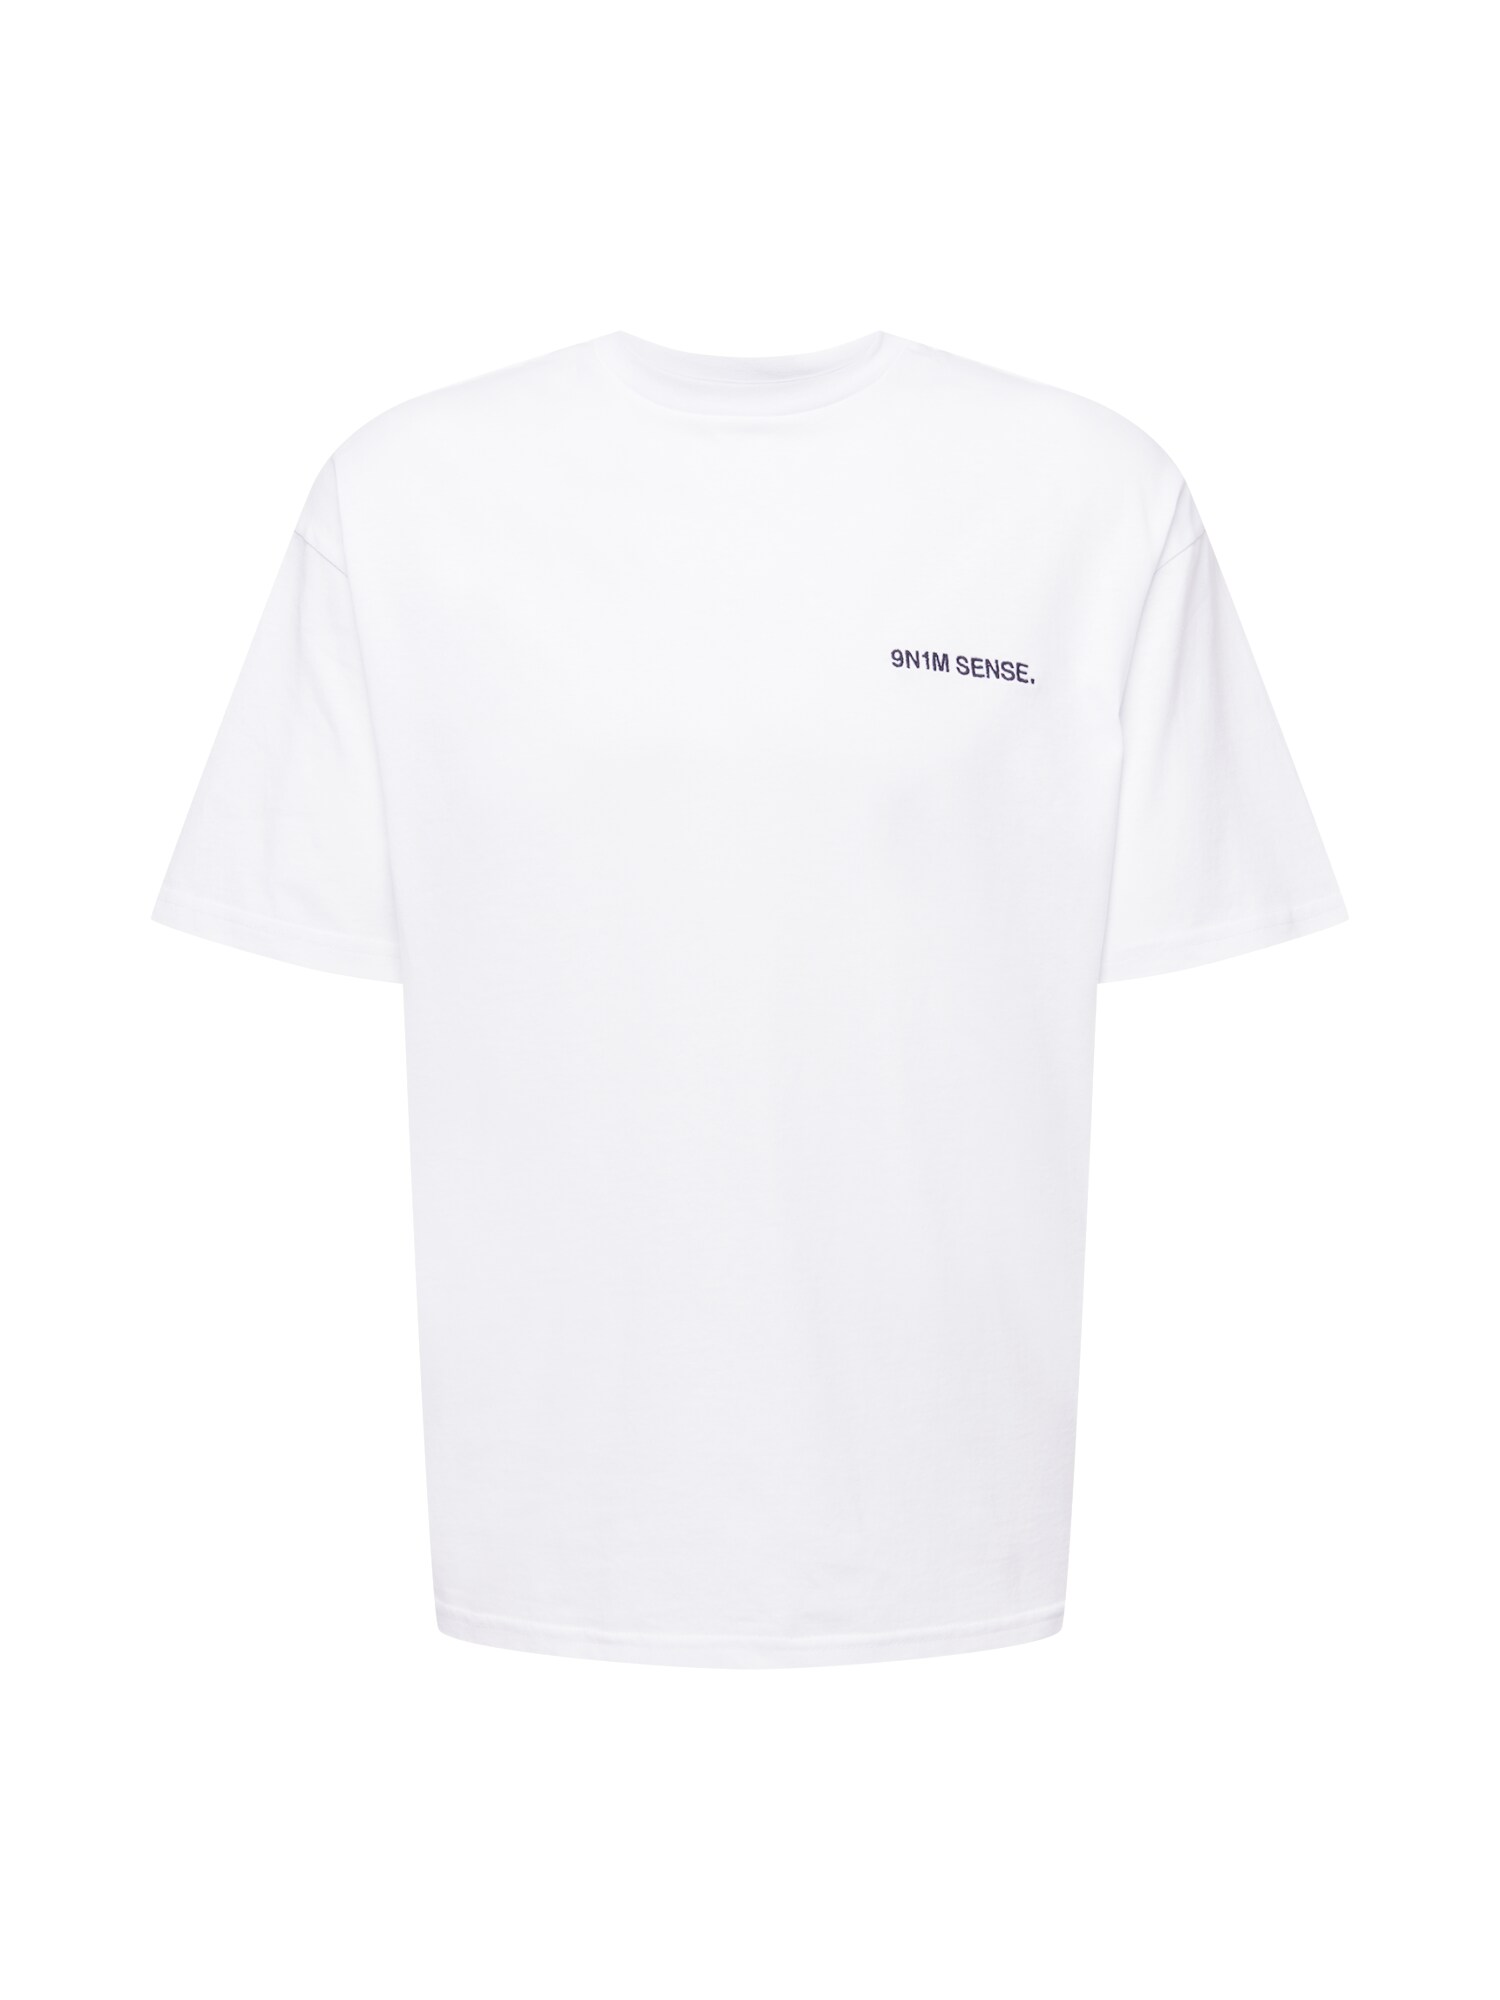 9N1M SENSE Marškinėliai balta / juoda